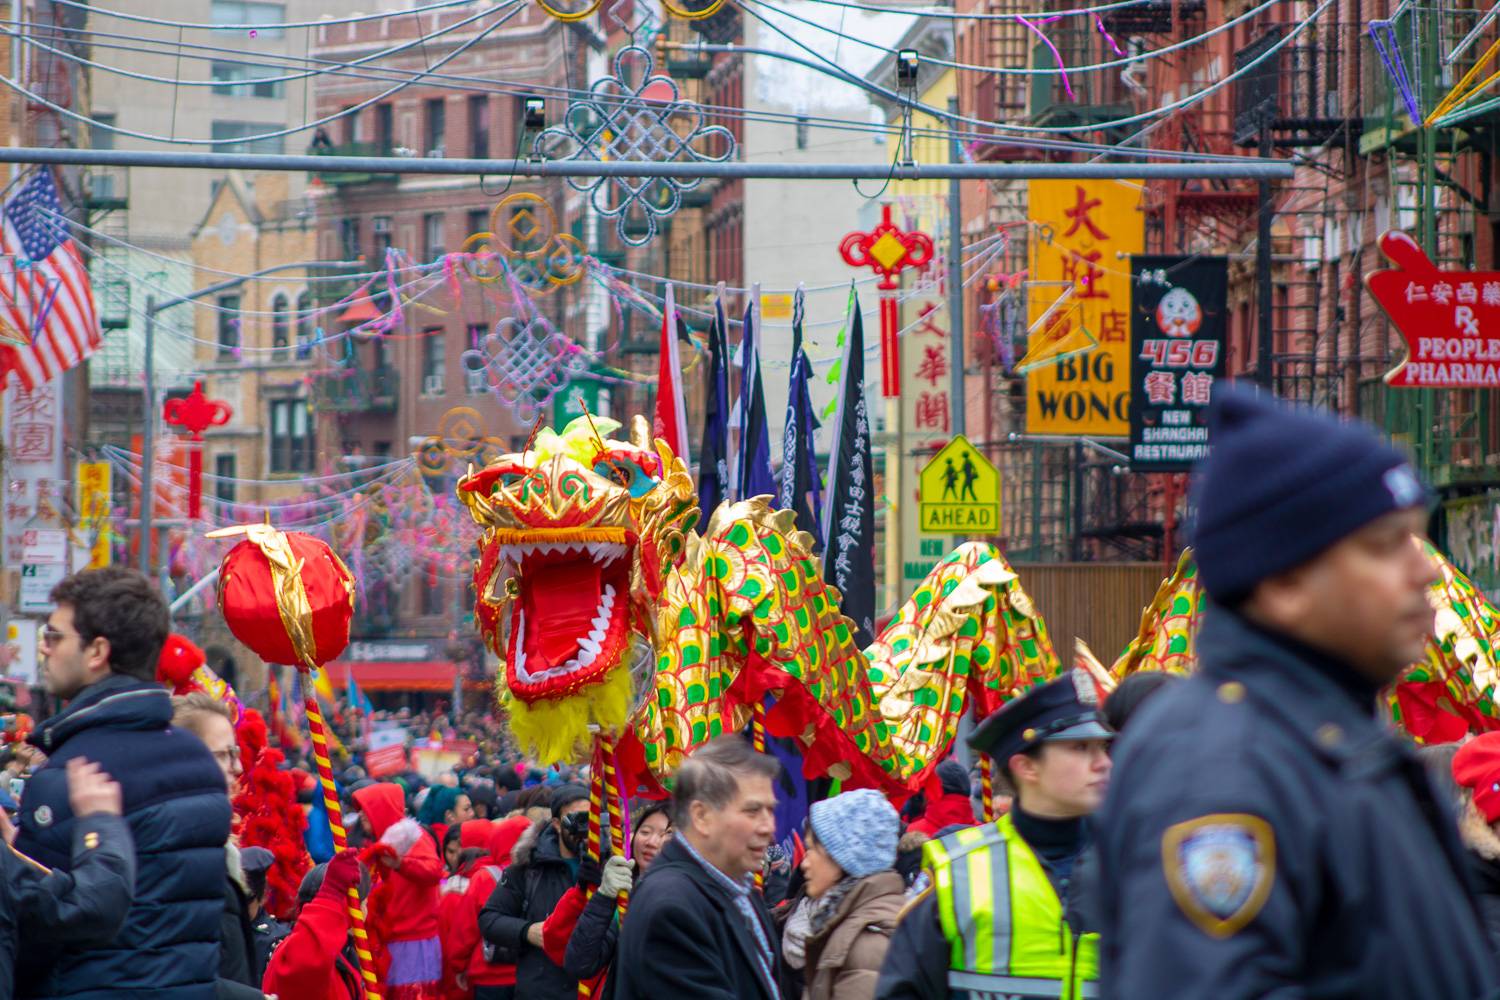 Foto - 5 gruende besuchen nyc chinesisches neujahr chinatown drachen parade